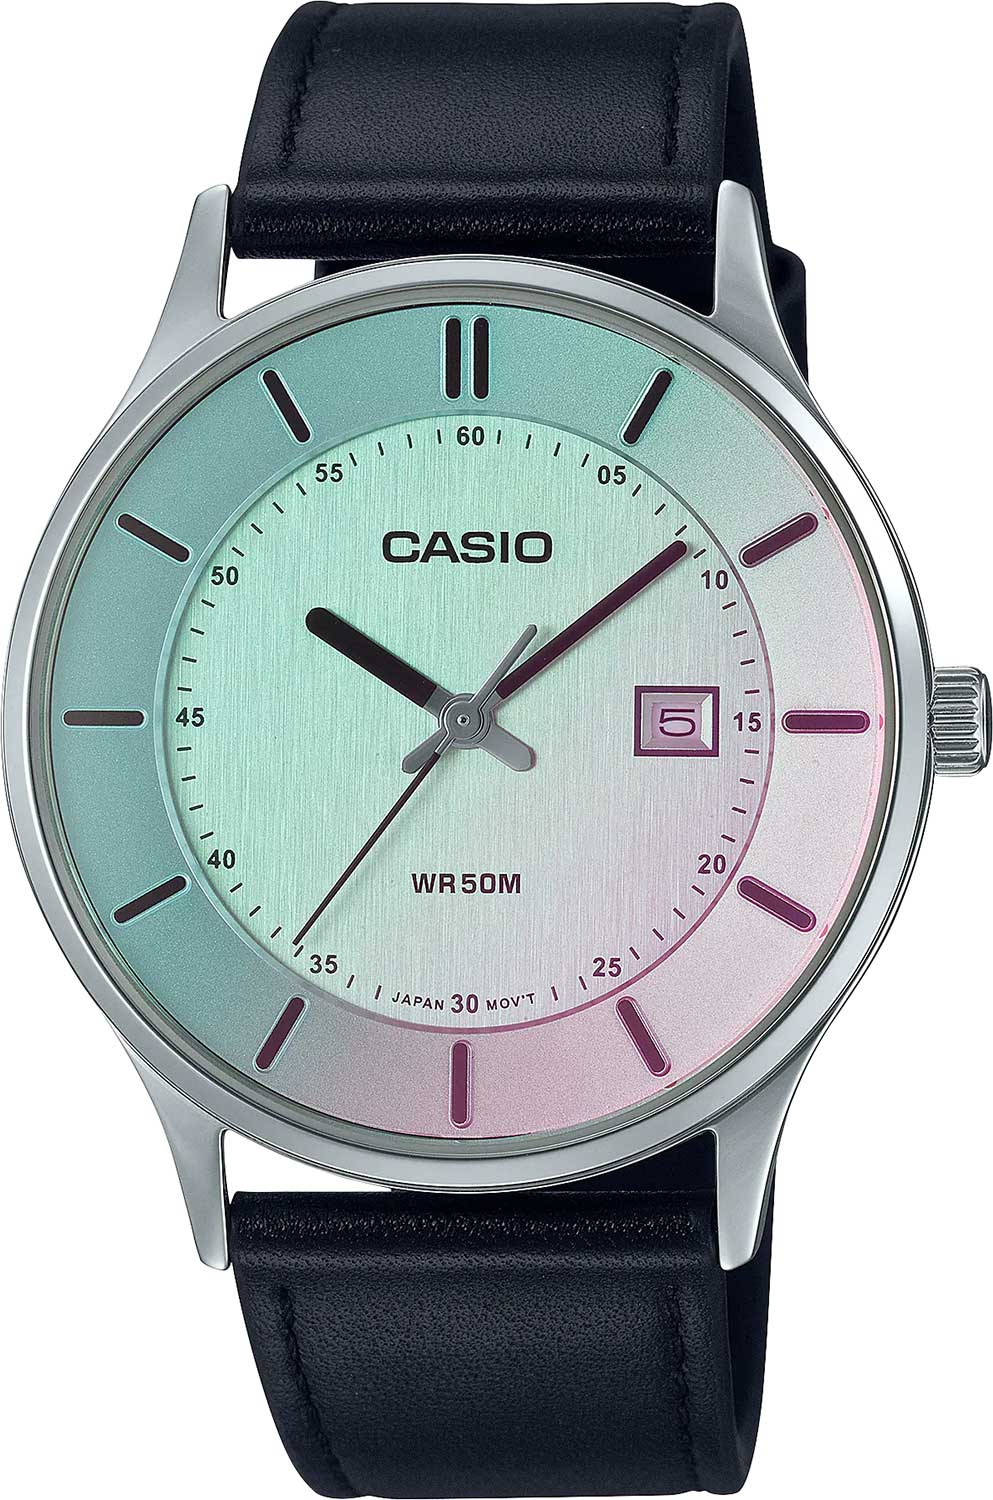    Casio Collection MTP-E605L-7E